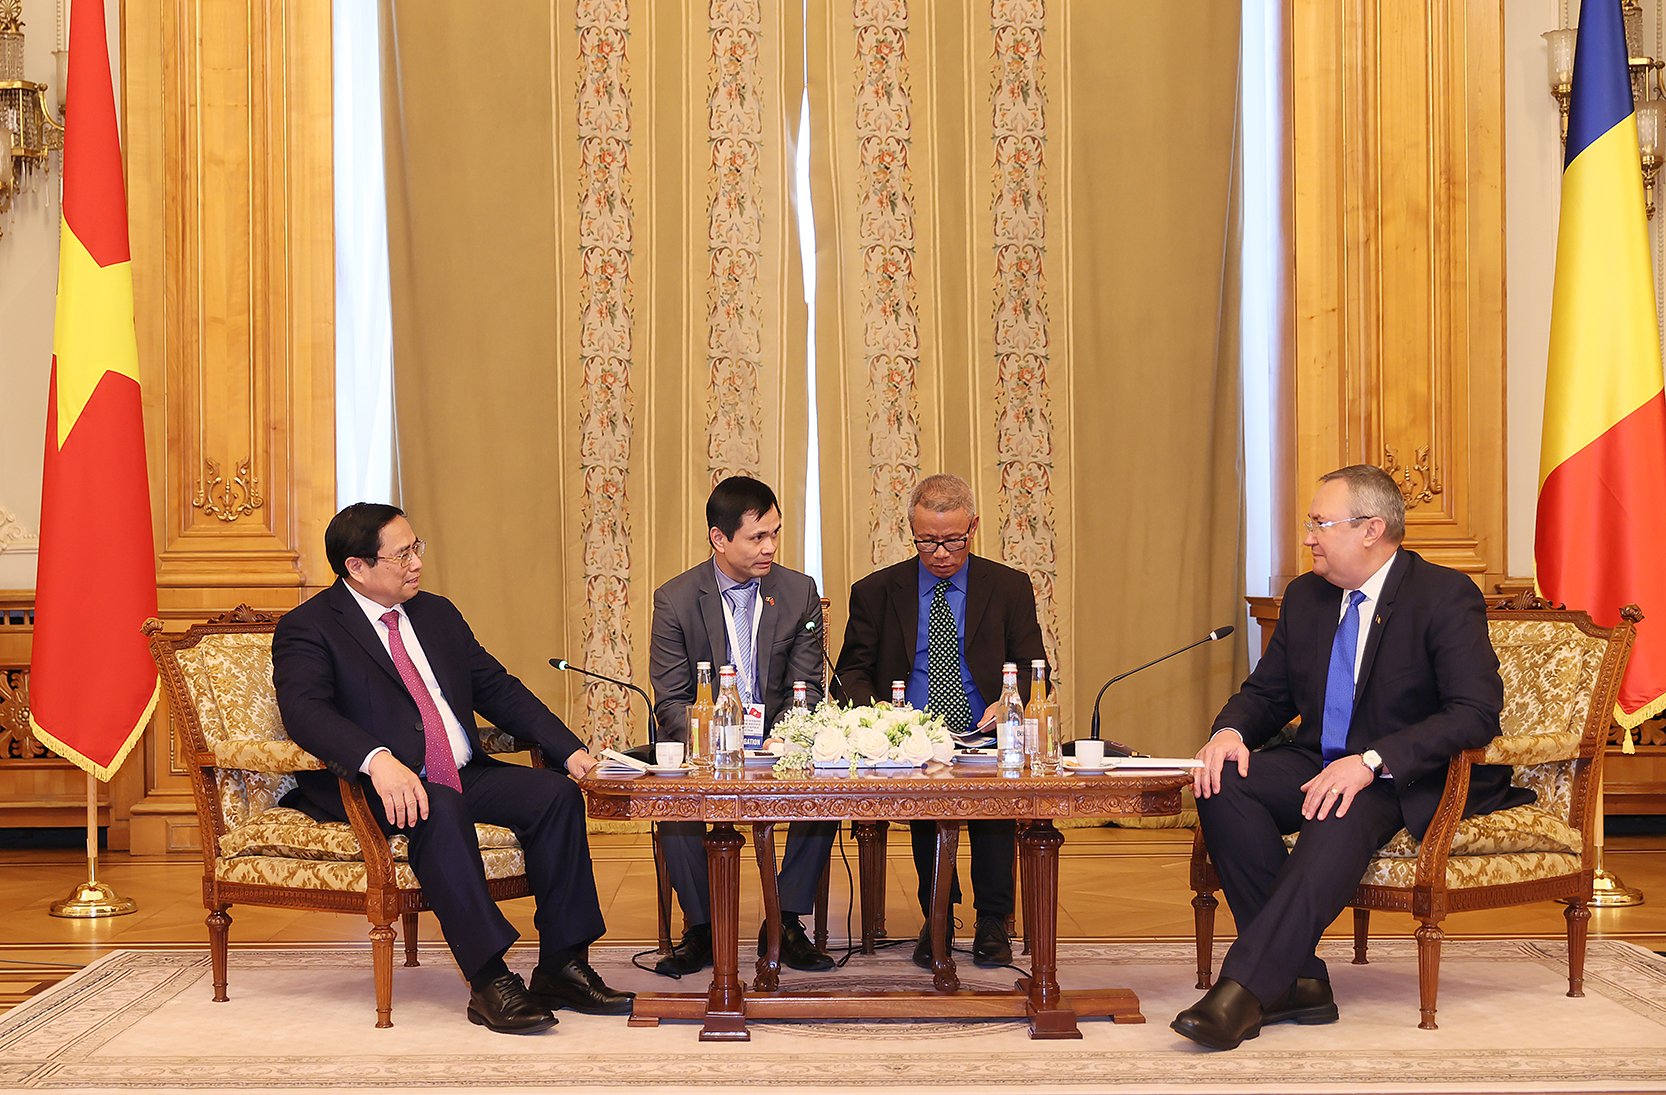 Chủ tịch Thượng viện Romania đánh giá cao chuyến thăm của Thủ tướng, là dấu mốc quan trọng trong quan hệ hai nước trong bối cảnh hai bên sẽ tiến tới kỷ niệm 75 năm thiết lập quan hệ vào năm 2025 - Ảnh: VGP/Nhật Bắc